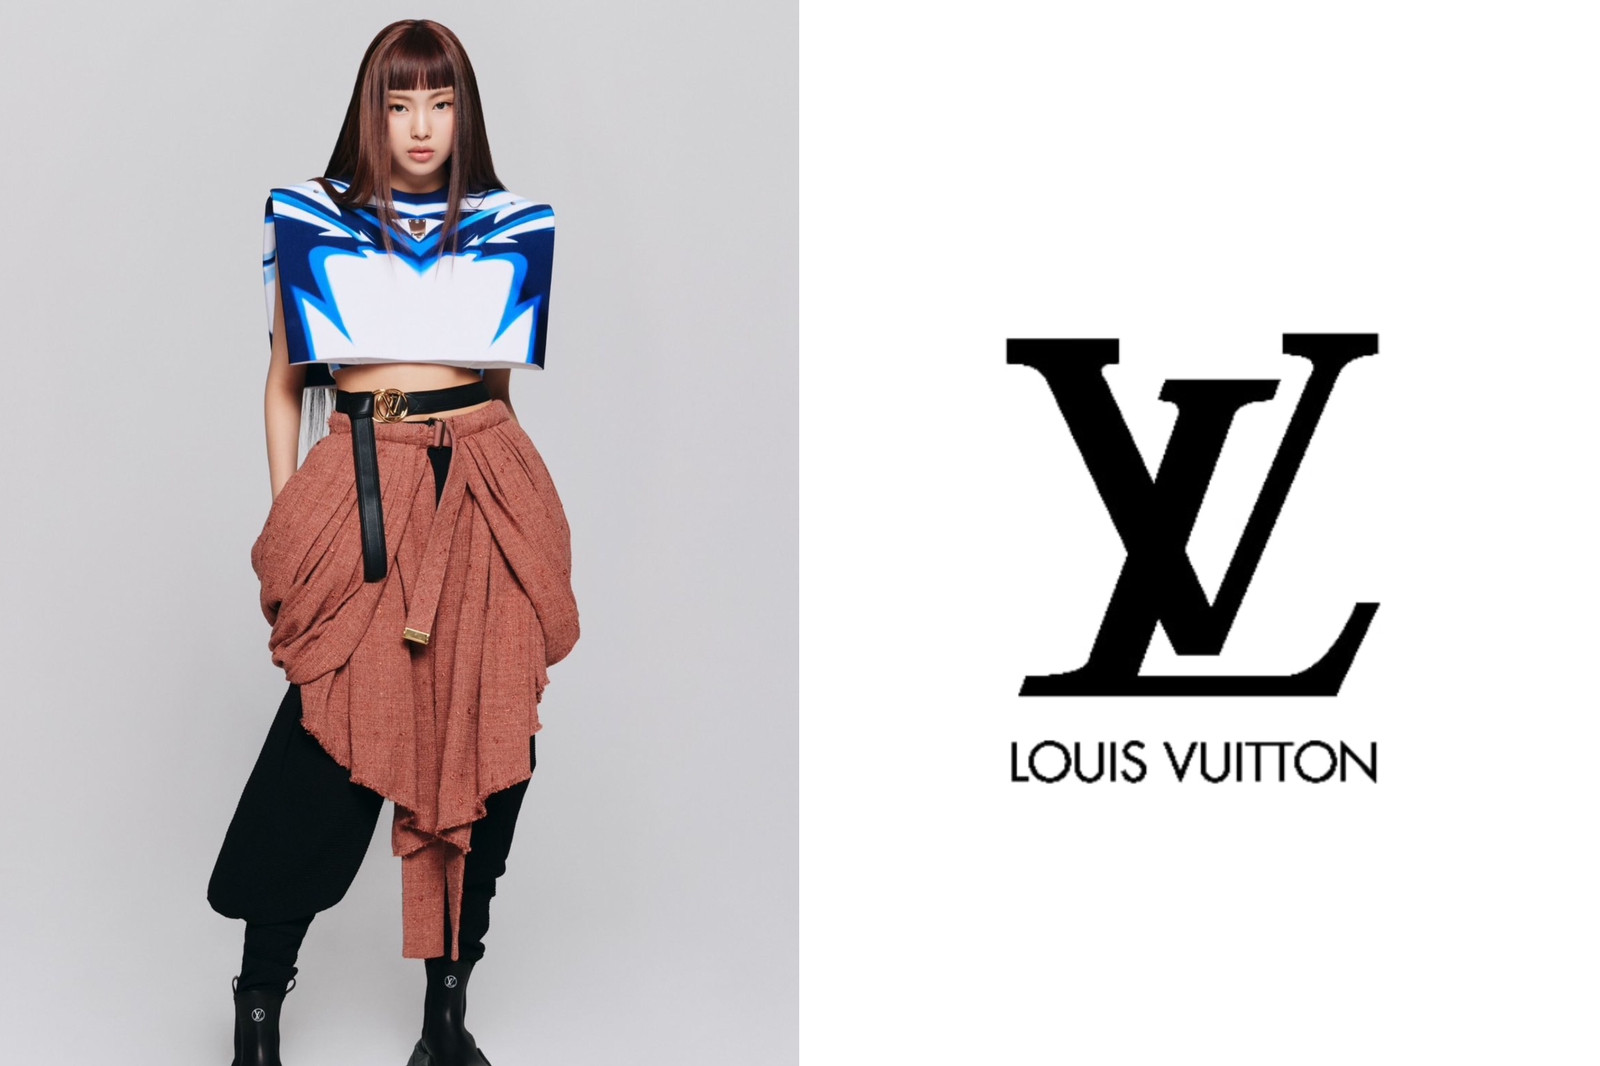 Louis Vuitton Newest Brand Ambassador 🤎 HYEIN #NEWJEANS #뉴진스 #HYEIN #혜인